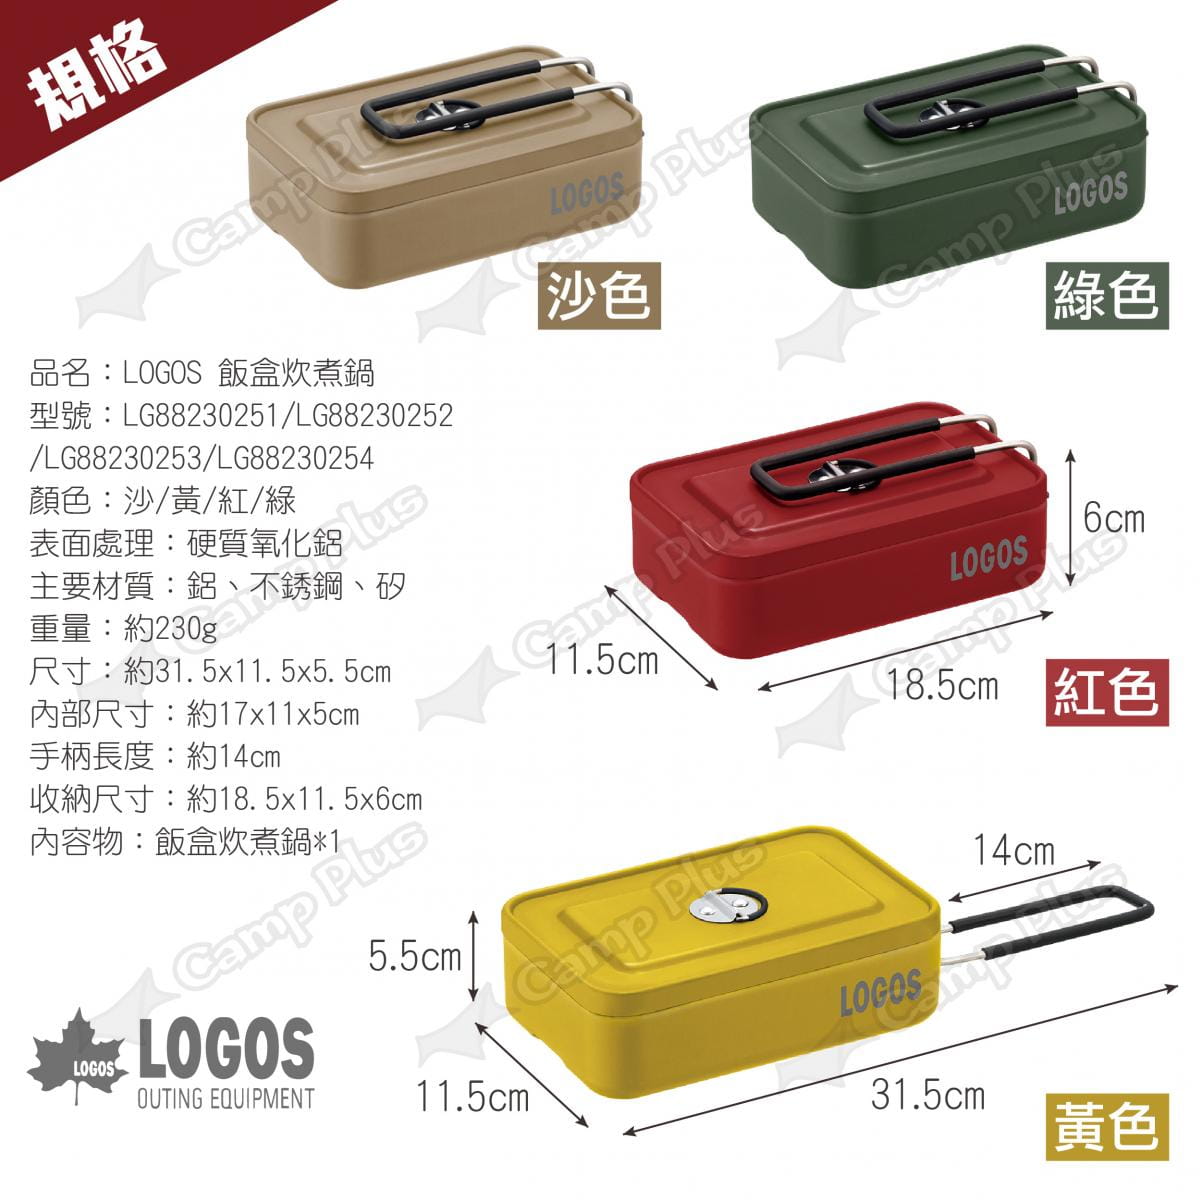 【LOGOS】飯盒炊煮鍋 多色可選 LG88230251~54 悠遊戶外 6